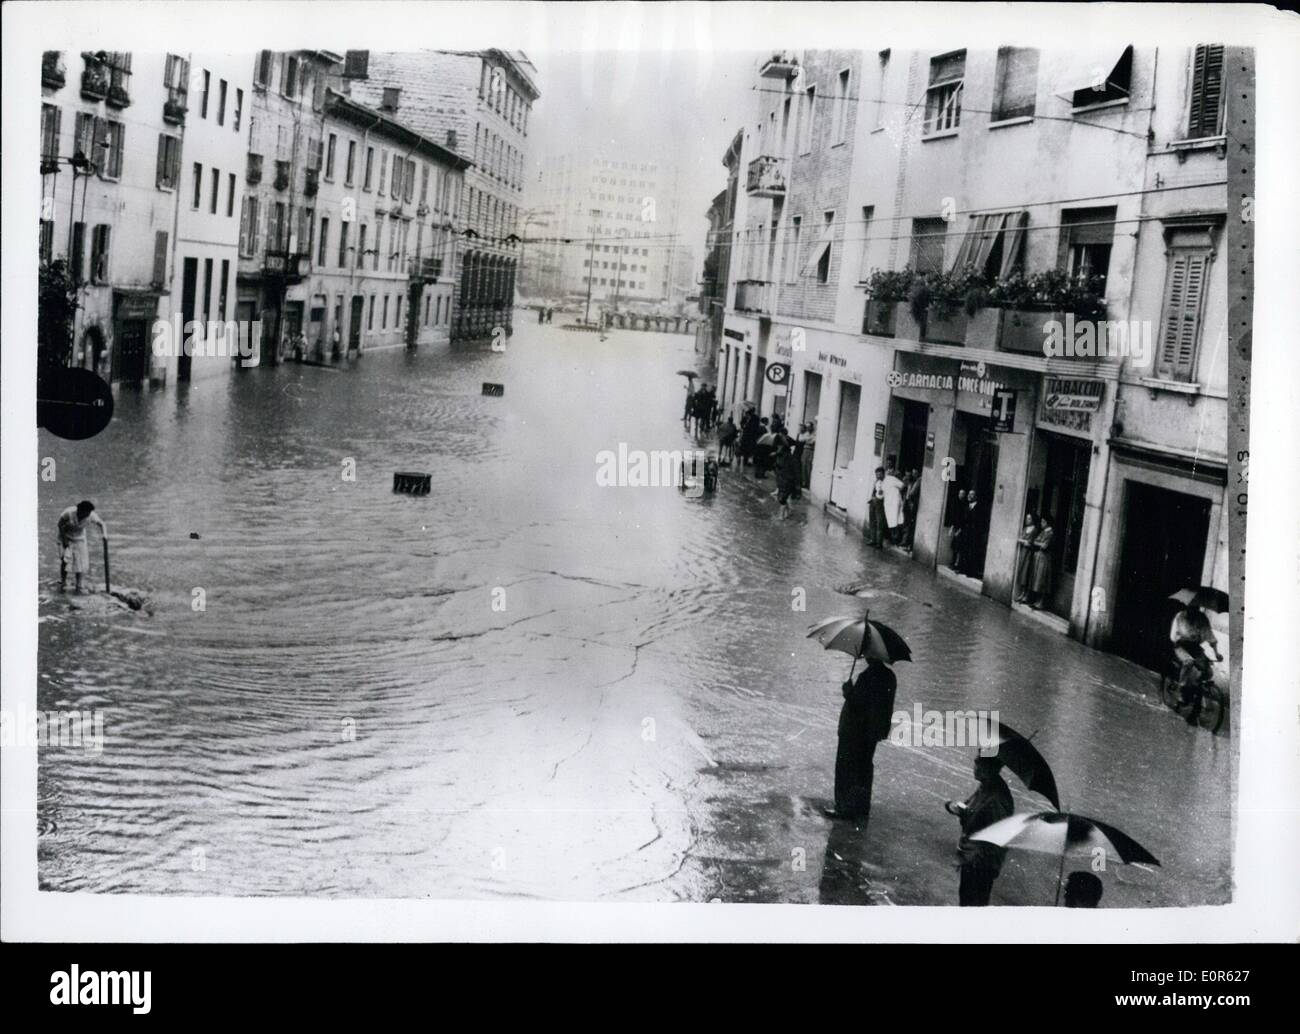 6. Juni 1958 - verursachen heftige Wolkenbrüche schweren Überschwemmungen in Italien. Hauptstraße von Brescia - unter Wasser: viele Teile Italiens waren überflutet - nach heftigen Wolkenbrüche die Flüsse bis zum Überlauf verursacht. Einer der schlimmsten Orte, hit war der Stadt Brescia. Foto zeigt Gesamtansicht von der Hauptstraße in Brescia nach das Ausströmen des Flusses Garza. Durch diese Straße verläuft normalerweise Verkehr für Milan - Triente - Venedig - Cremona etc.. Stockfoto